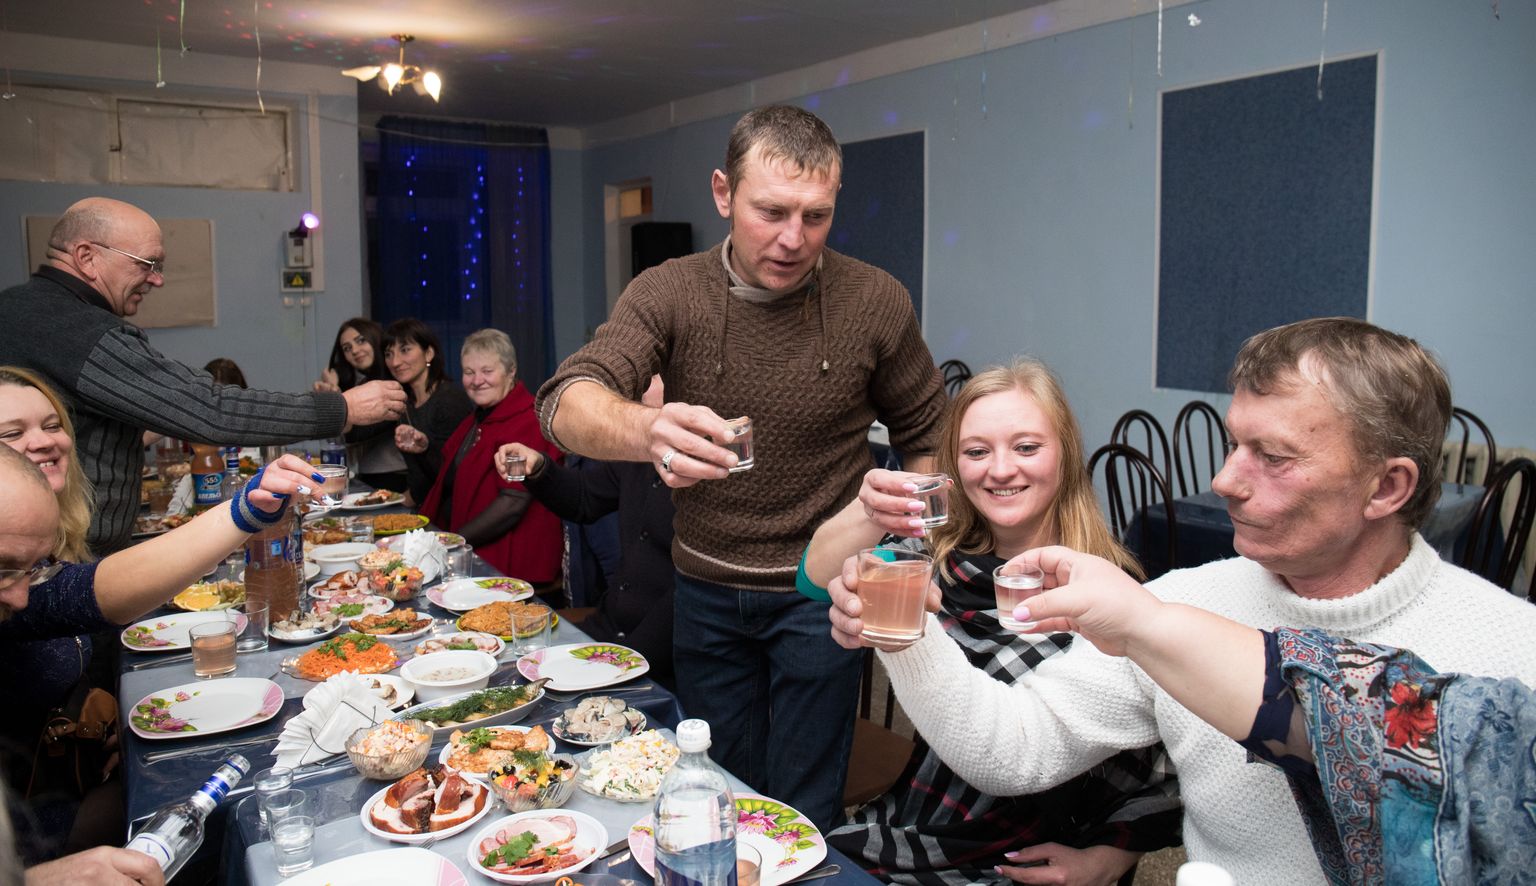 Sünnipäev Aleksandrovka külas Krimmi põhjaosas. 1500 elanikuga, kunagi tšehhide asutatud Aleksandrovka asub eestlaste küla Krasnodarka naabruses. Külalised löövad kokku sünnipäevalapse Jevgeniga (seisab pruunis džempris). Pidu toimus kohalikus baaris, laud oli kaetud nagu pulmas, aga enamik toitudest oli ise tehtud ja kodust kaasa võetud. Toost kõlas toosti järel, kuid pidu väga käest ära ei läinud. Esimesena jäi magama sünnipäevalaps ise.